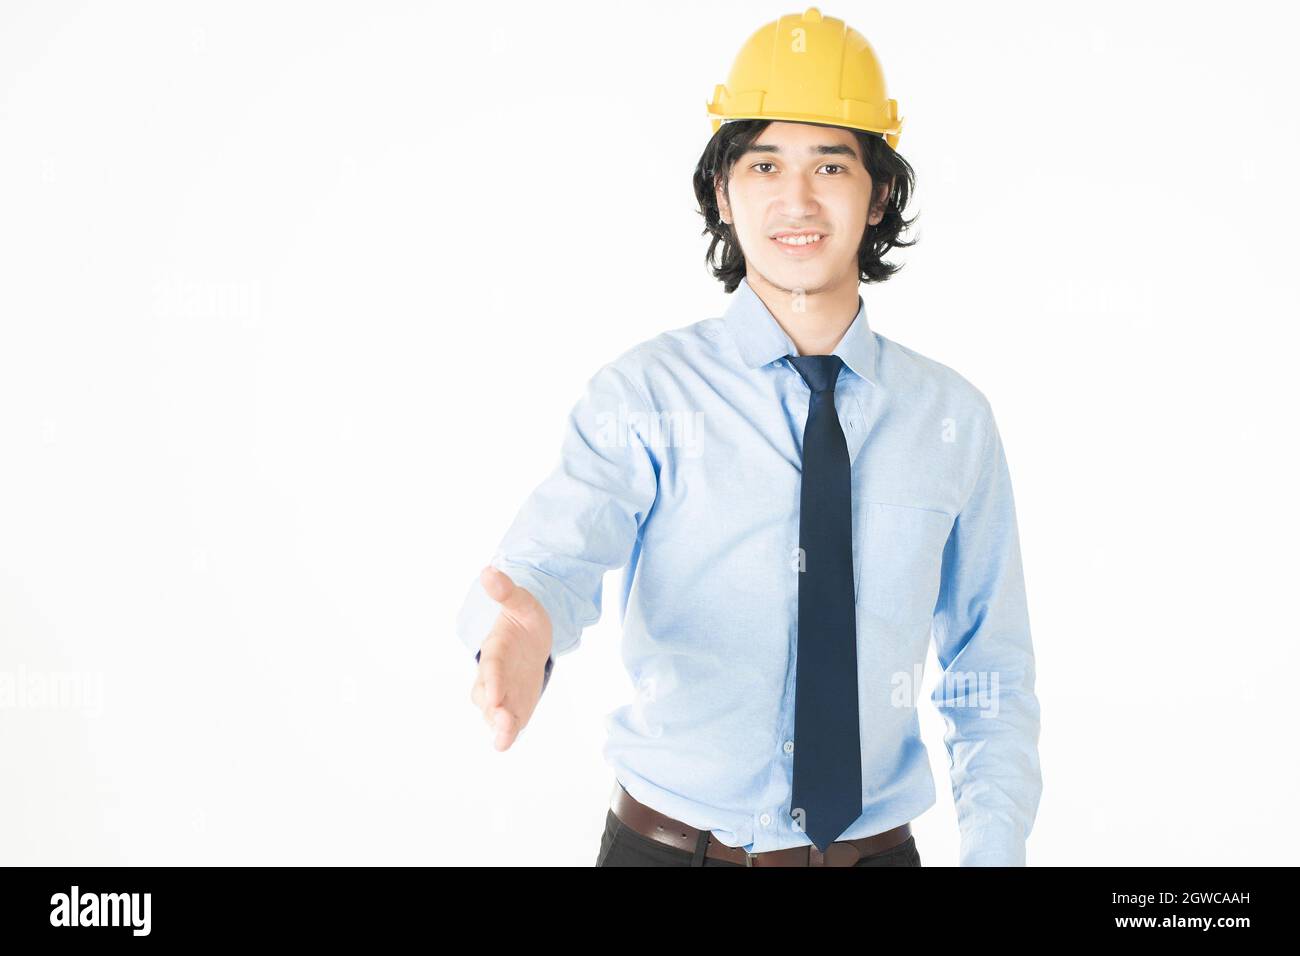 Portrait d'un ingénieur faisant un geste contre un arrière-plan blanc Banque D'Images